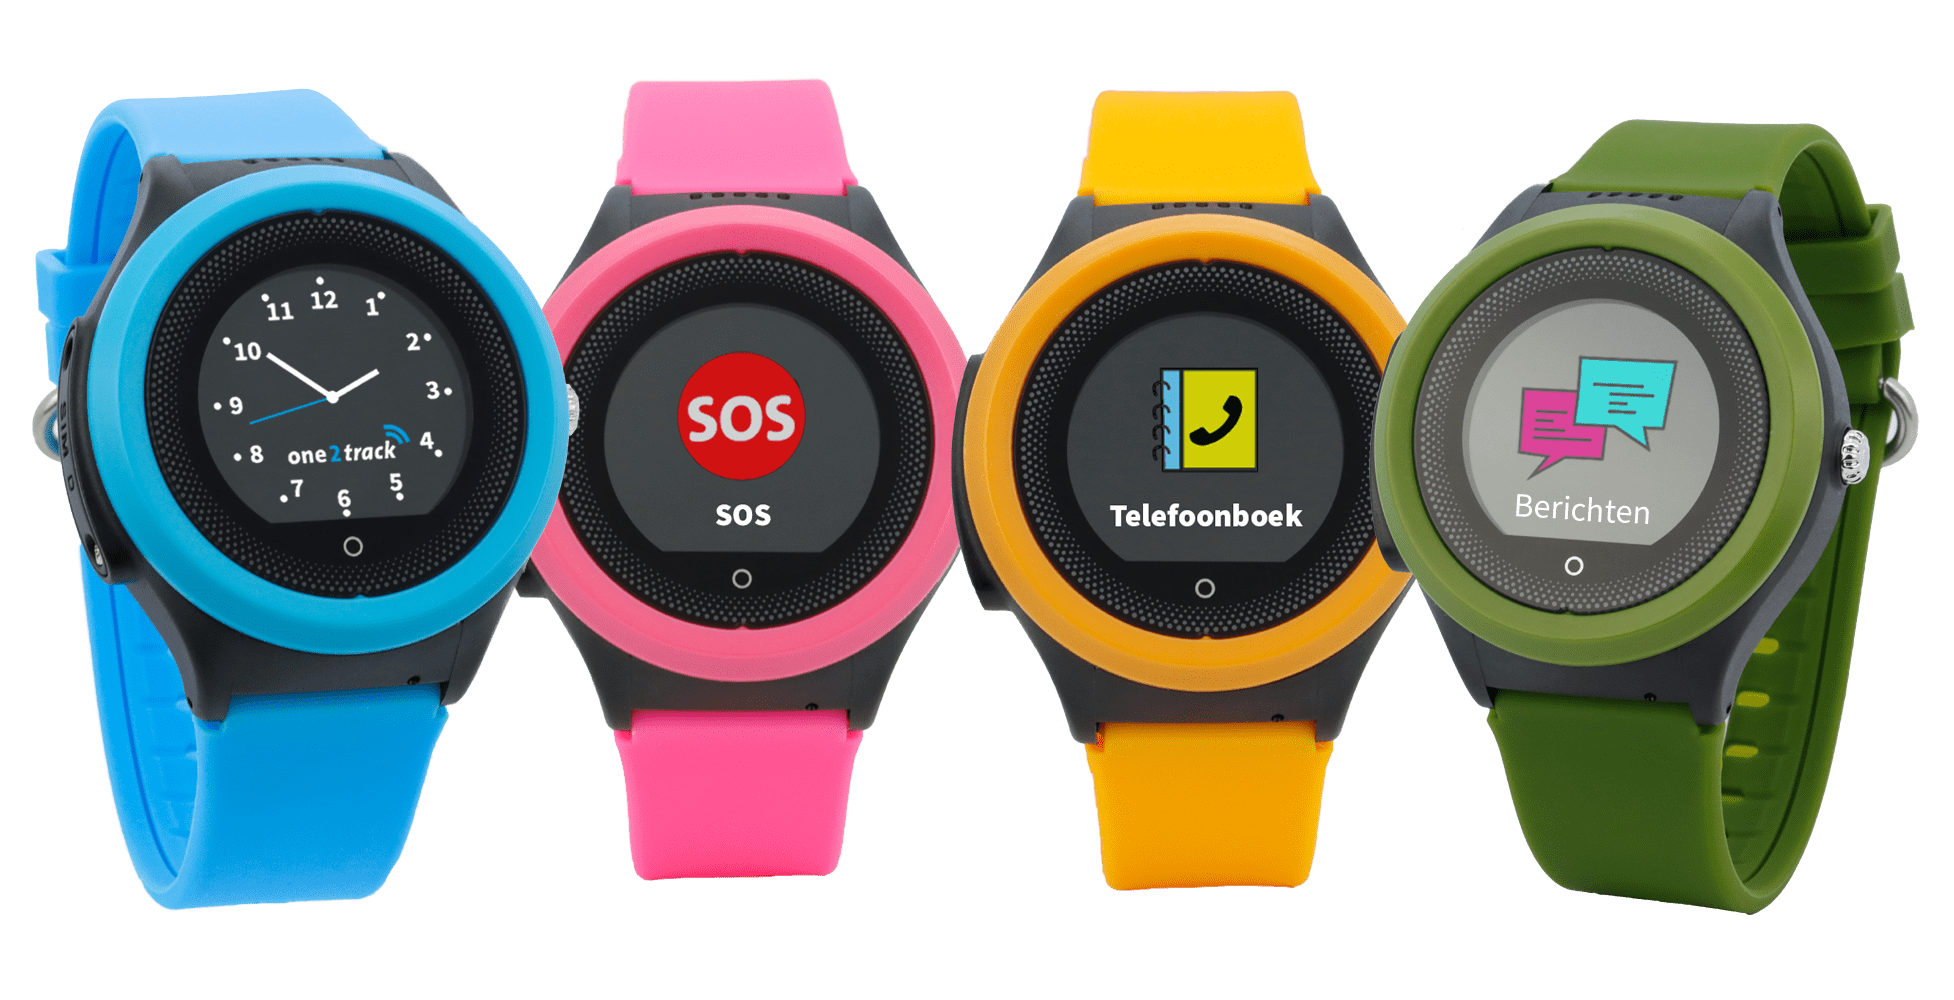 Connect Move GPS horloge met telefoon voor kinderen zwart roze blauw